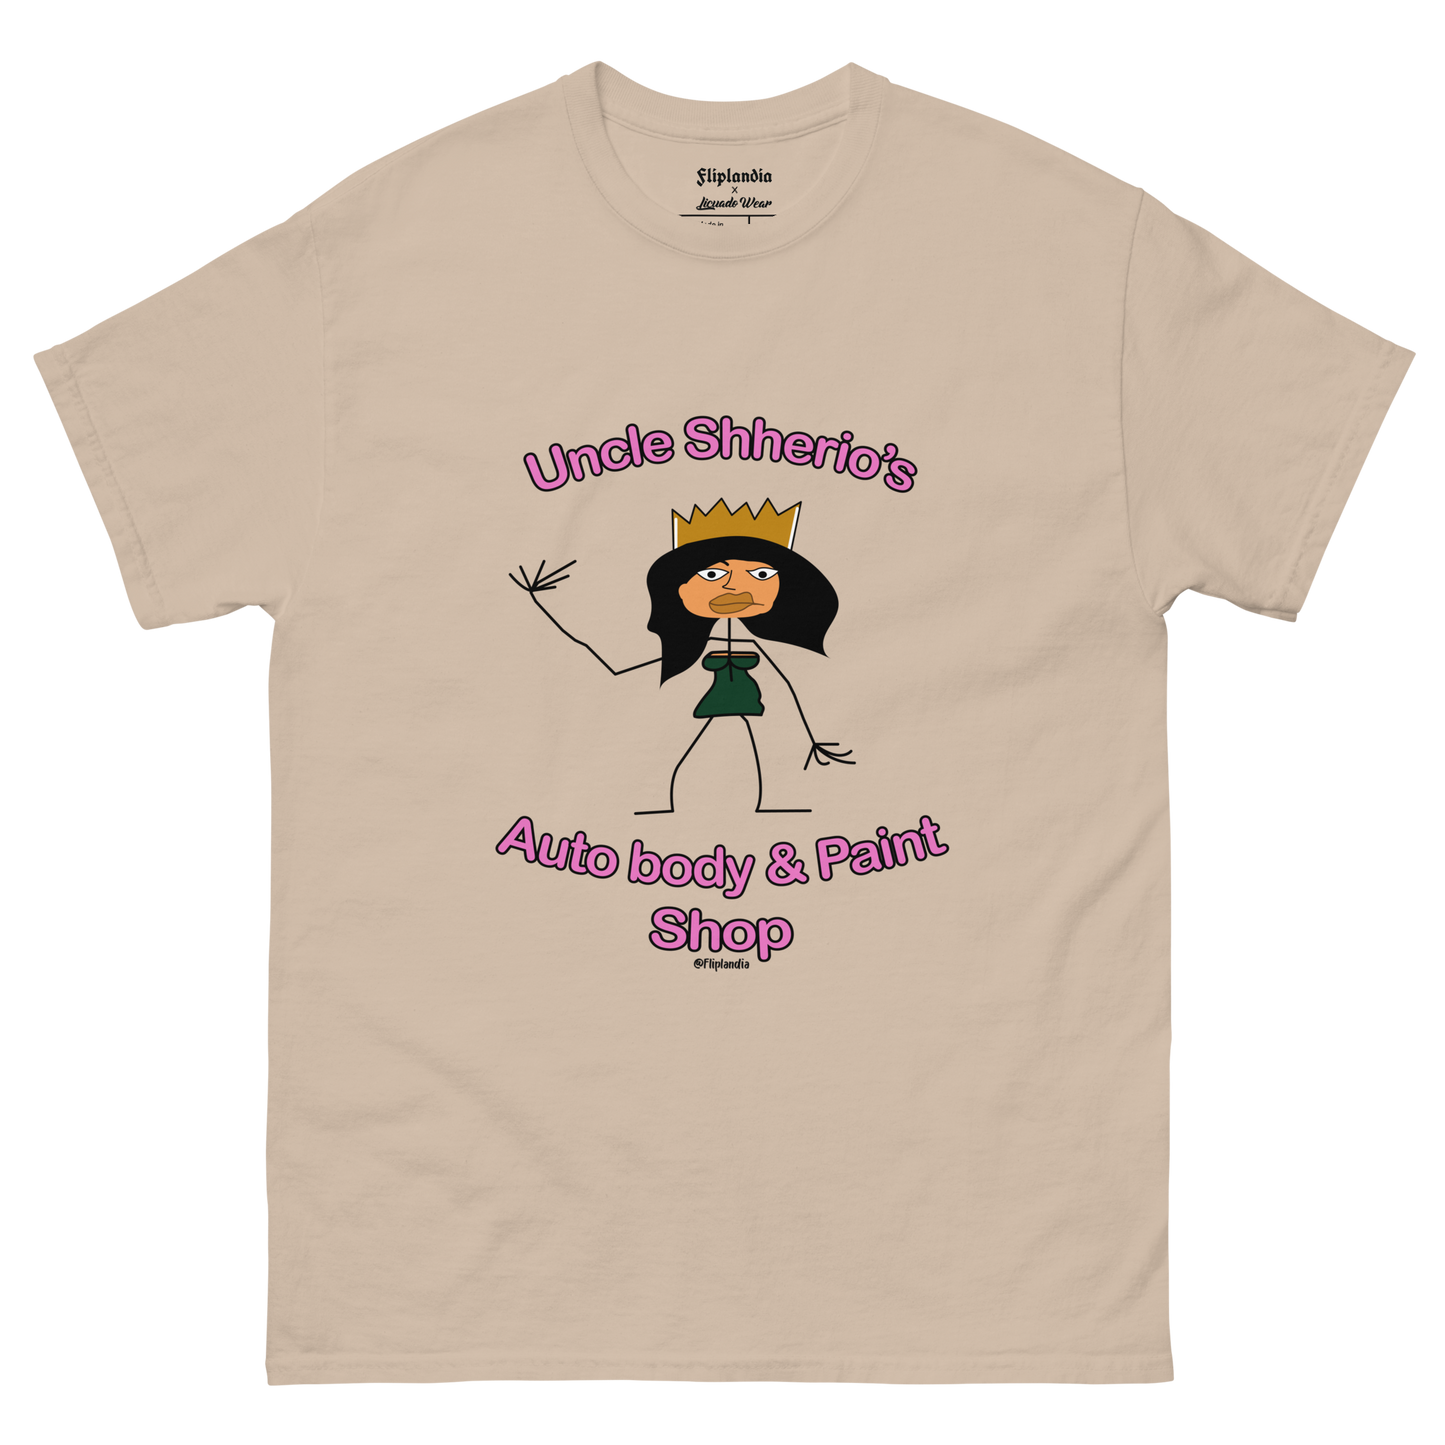 Uncle Shherio's Auto Body Shop (Aztec Princess) - Fliplandia Unisex T-shirt